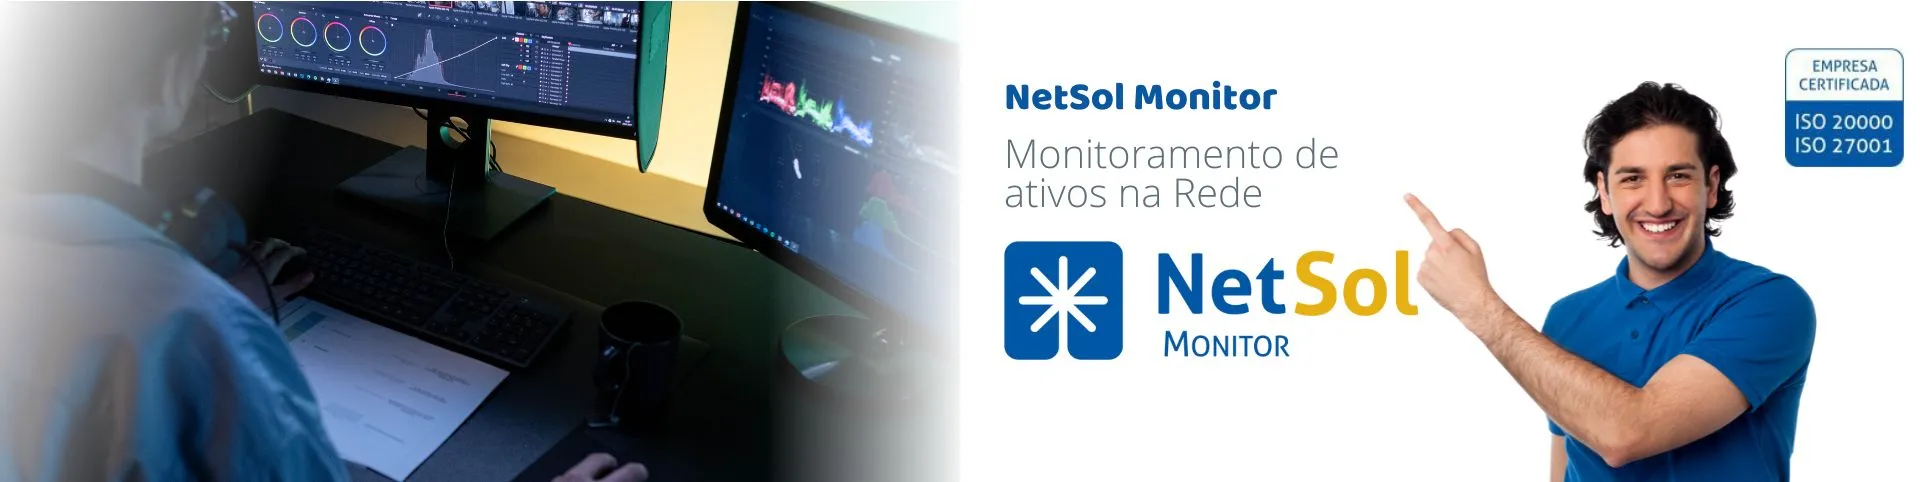 NetSol_Monitor